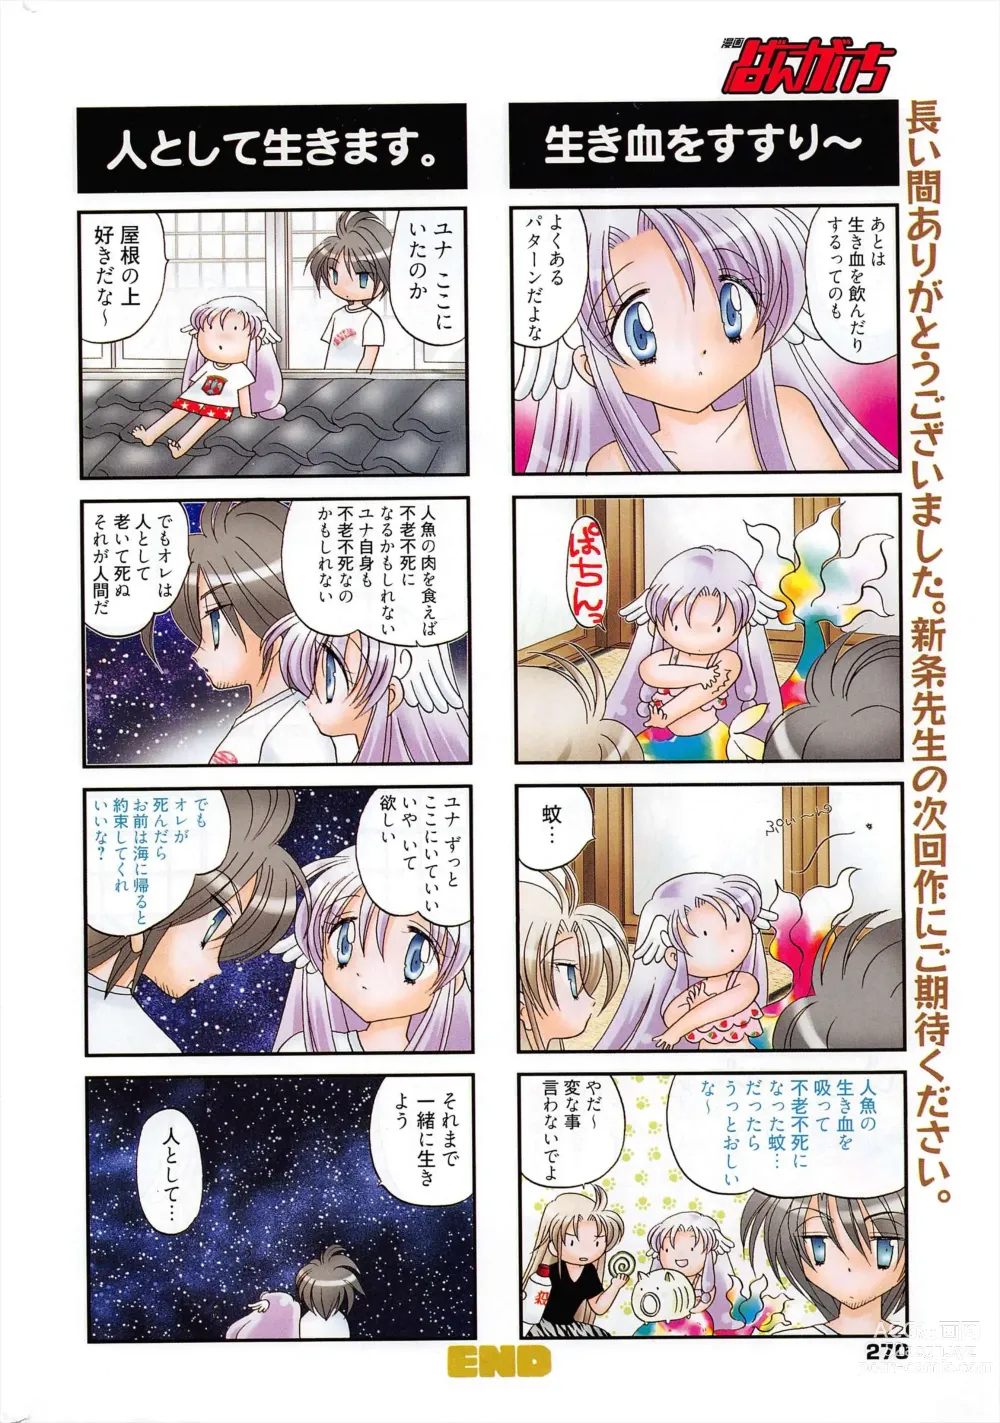 Page 270 of manga Manga Bangaichi 2011-05